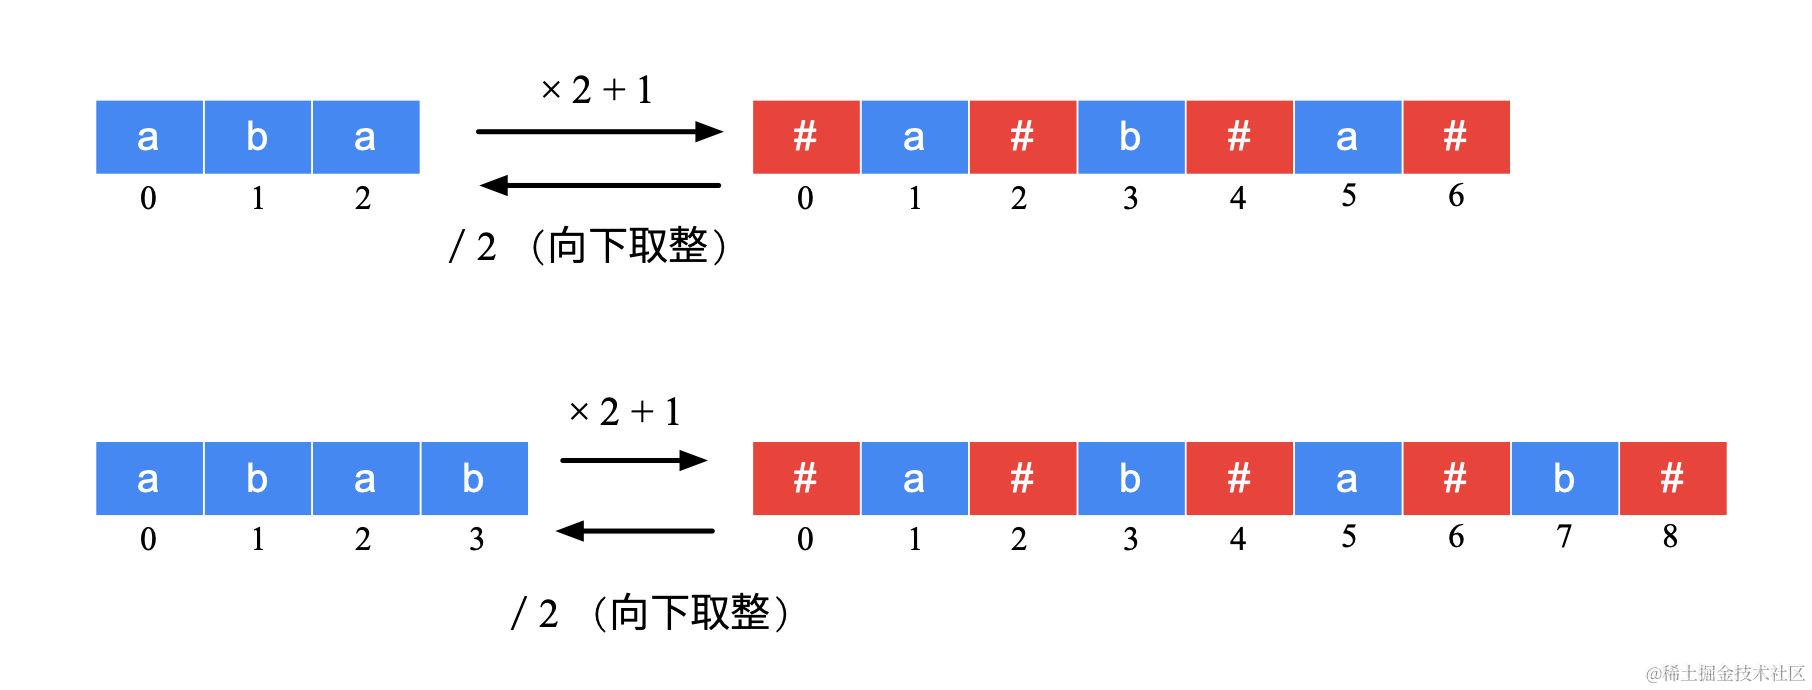 图 3：原始字符串与新字符串的对应关系